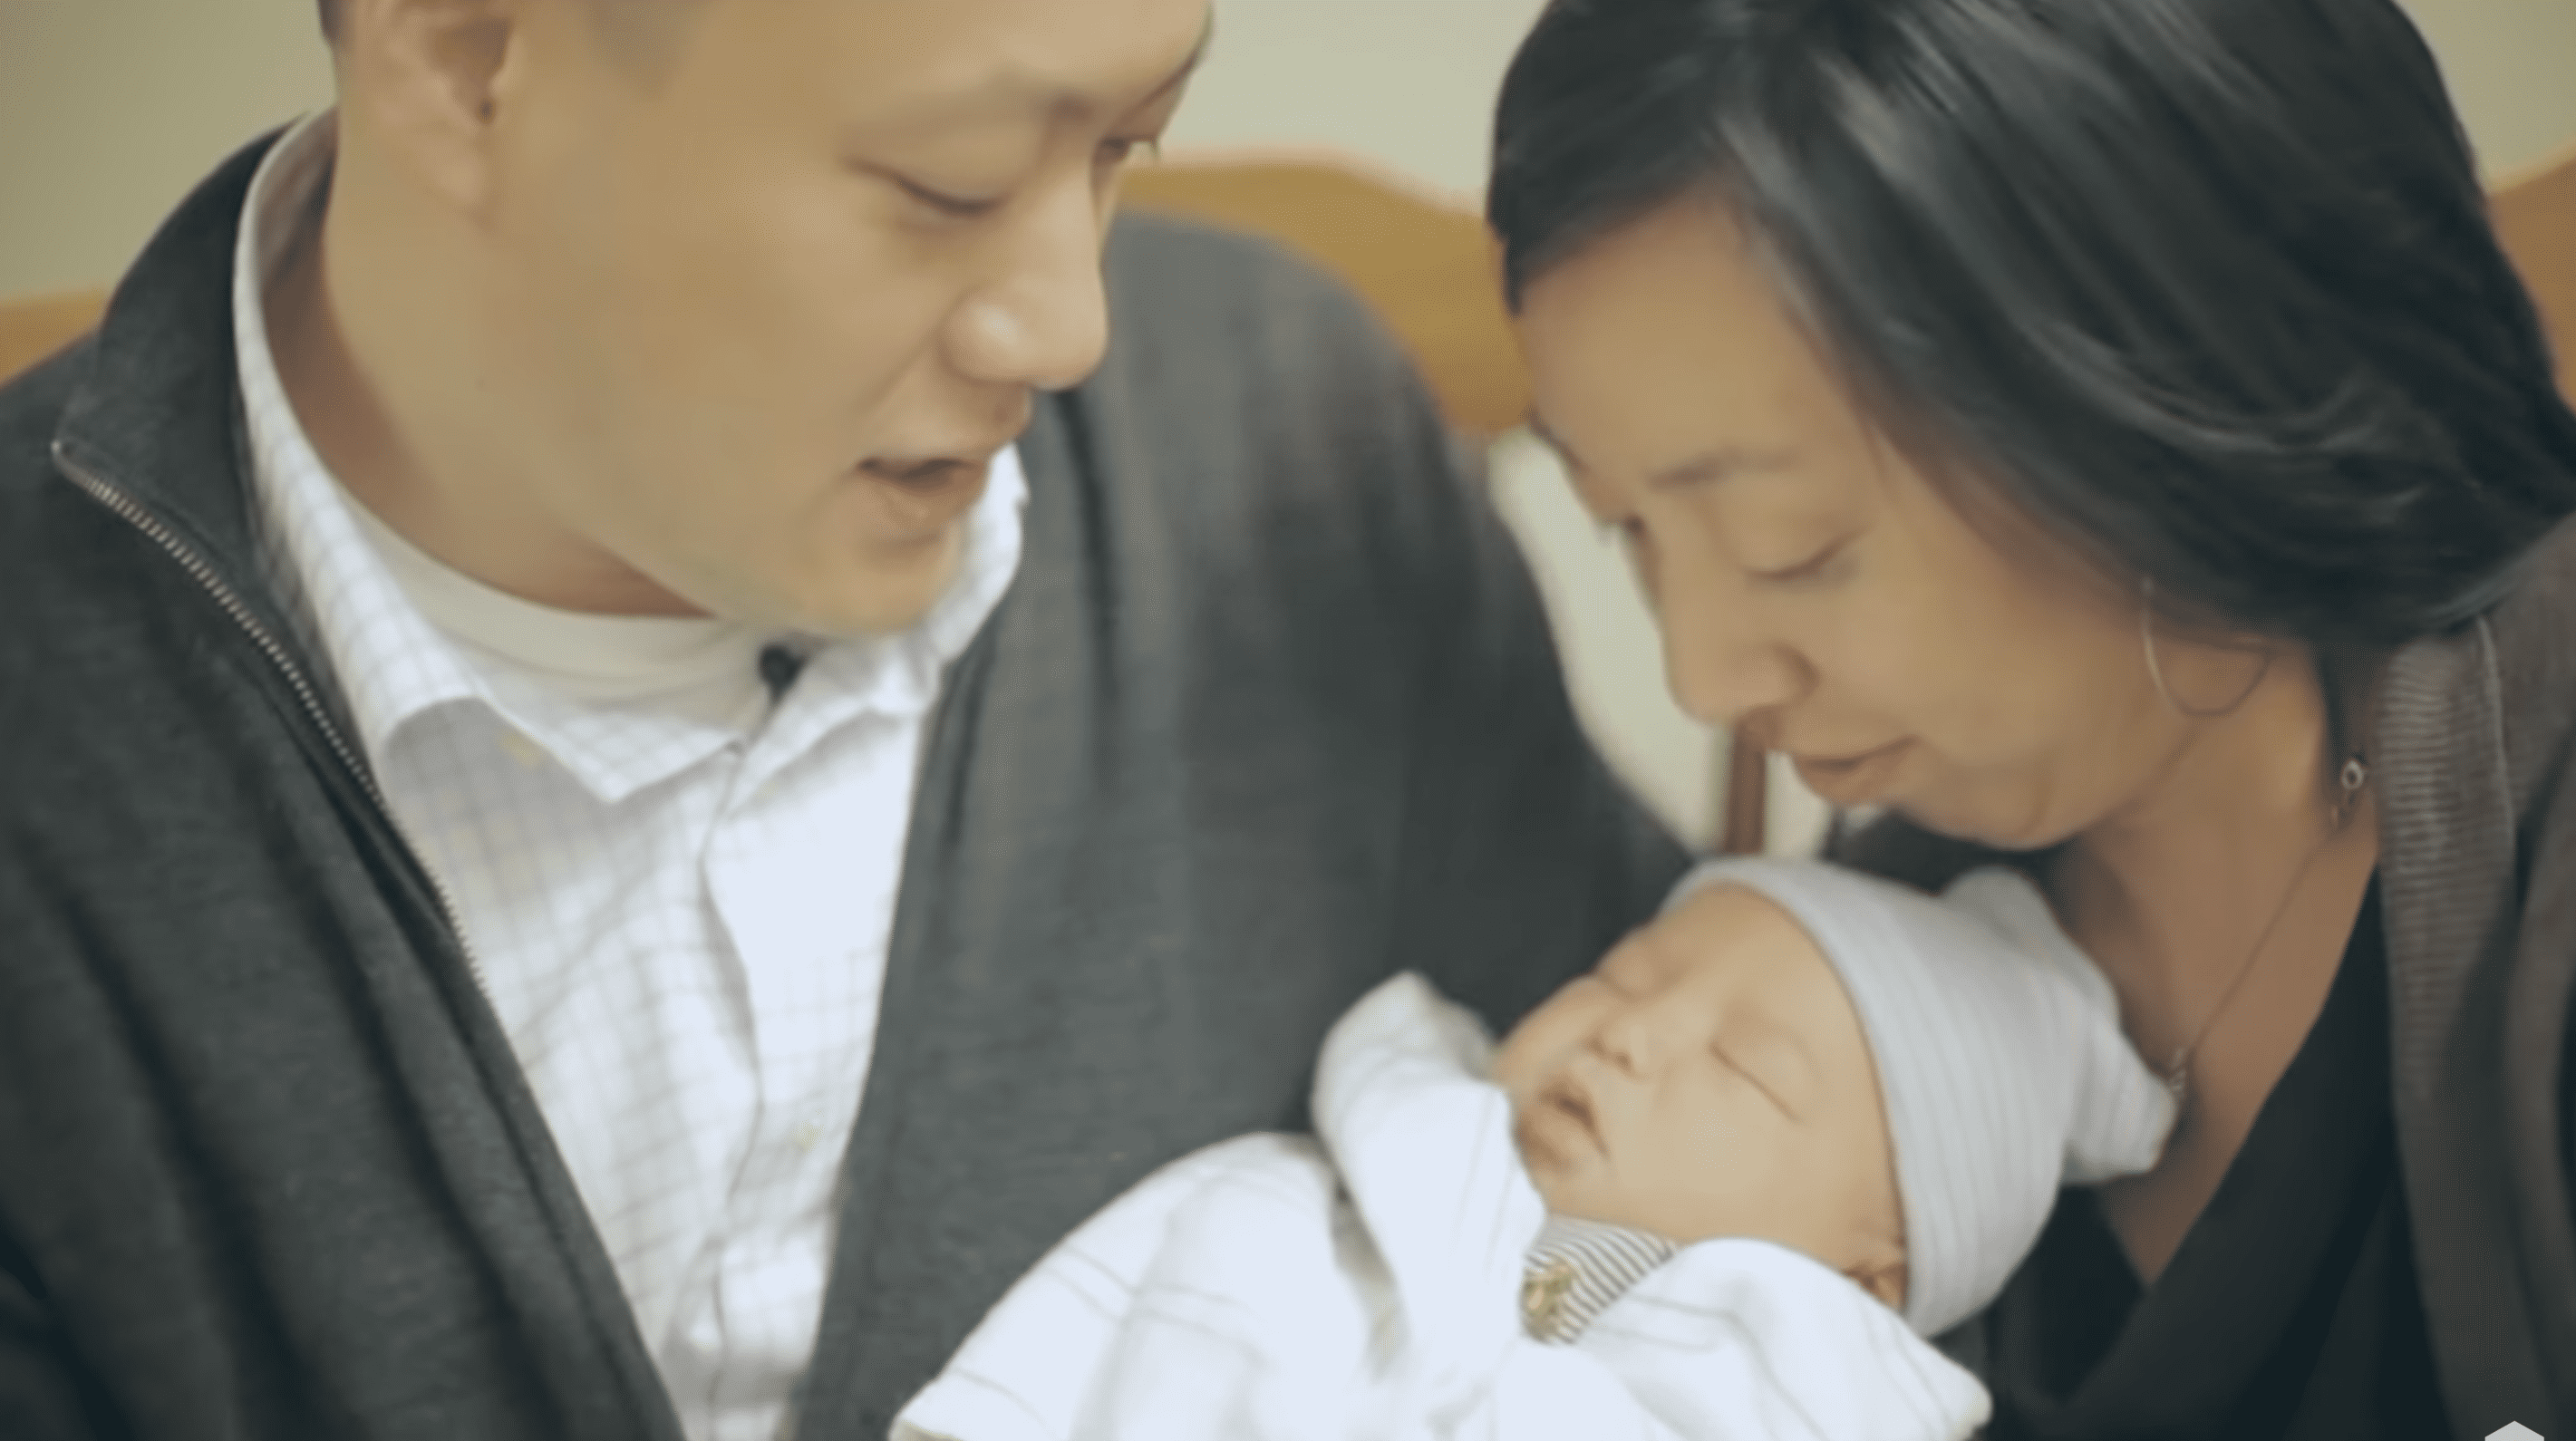 Les moments émouvants où la famille Chen a tenu son fils dans ses bras à l'hôpital. | Photo : YouTube.com/The Austin Stone